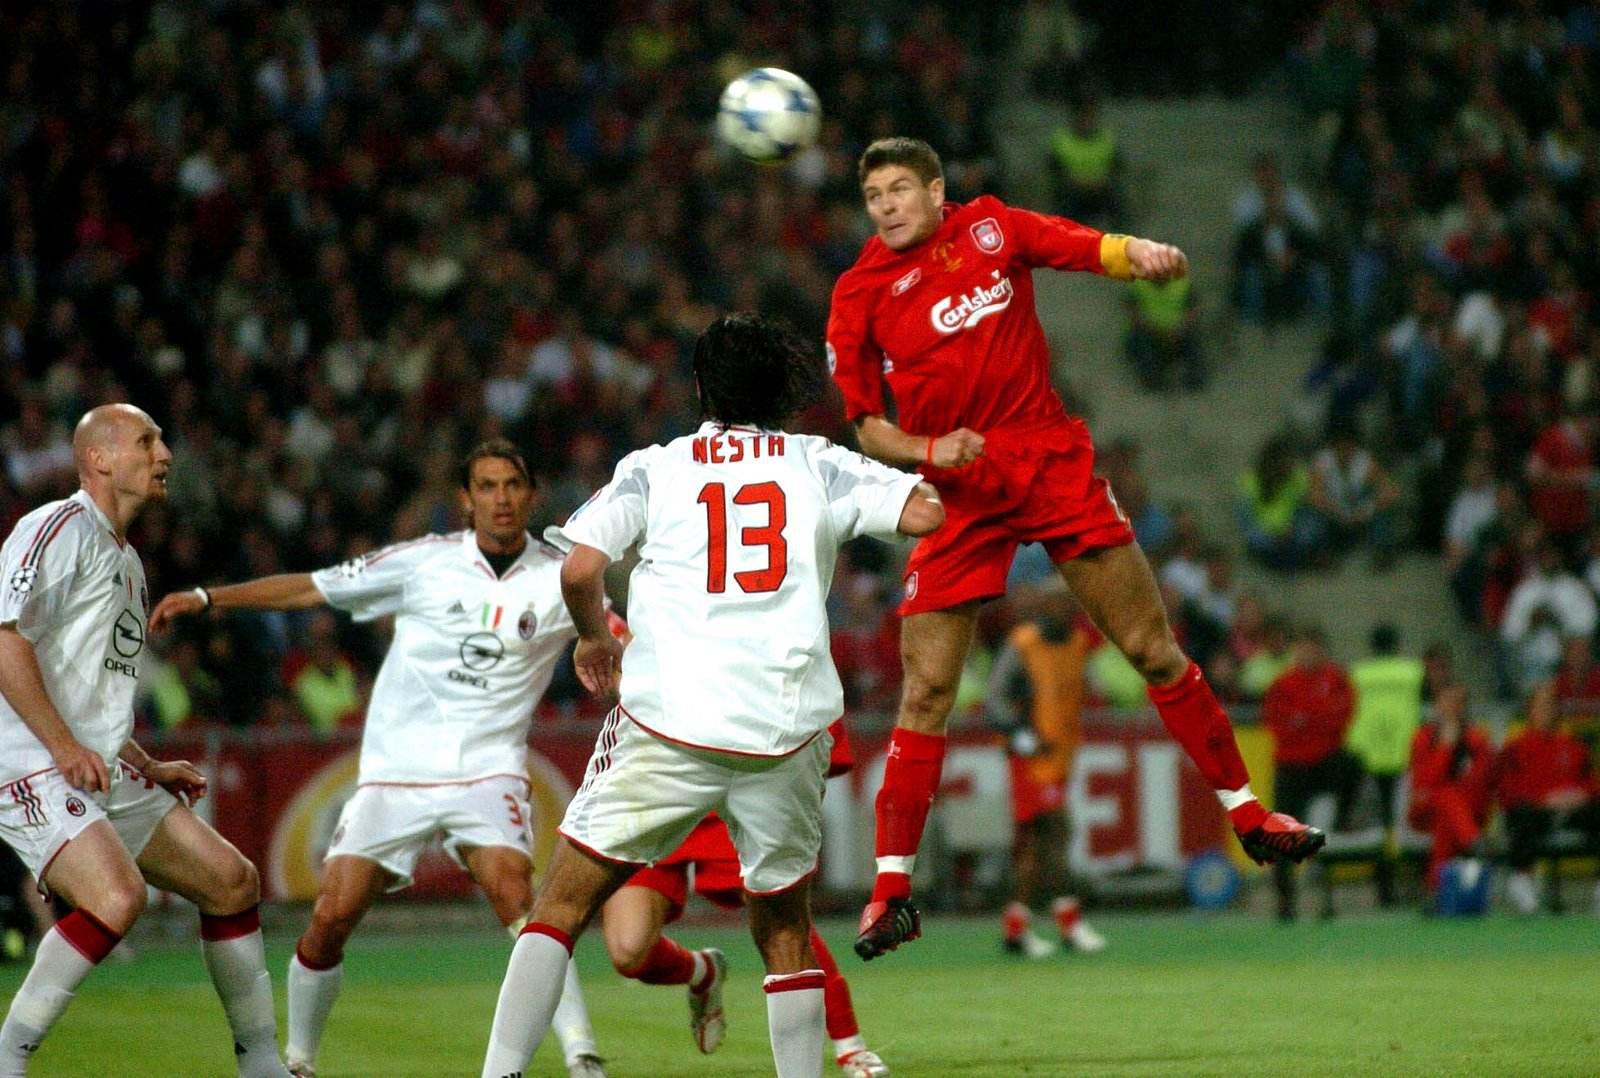 2003 04欧冠决赛 04——05欧冠决赛伊斯坦布尔奇迹